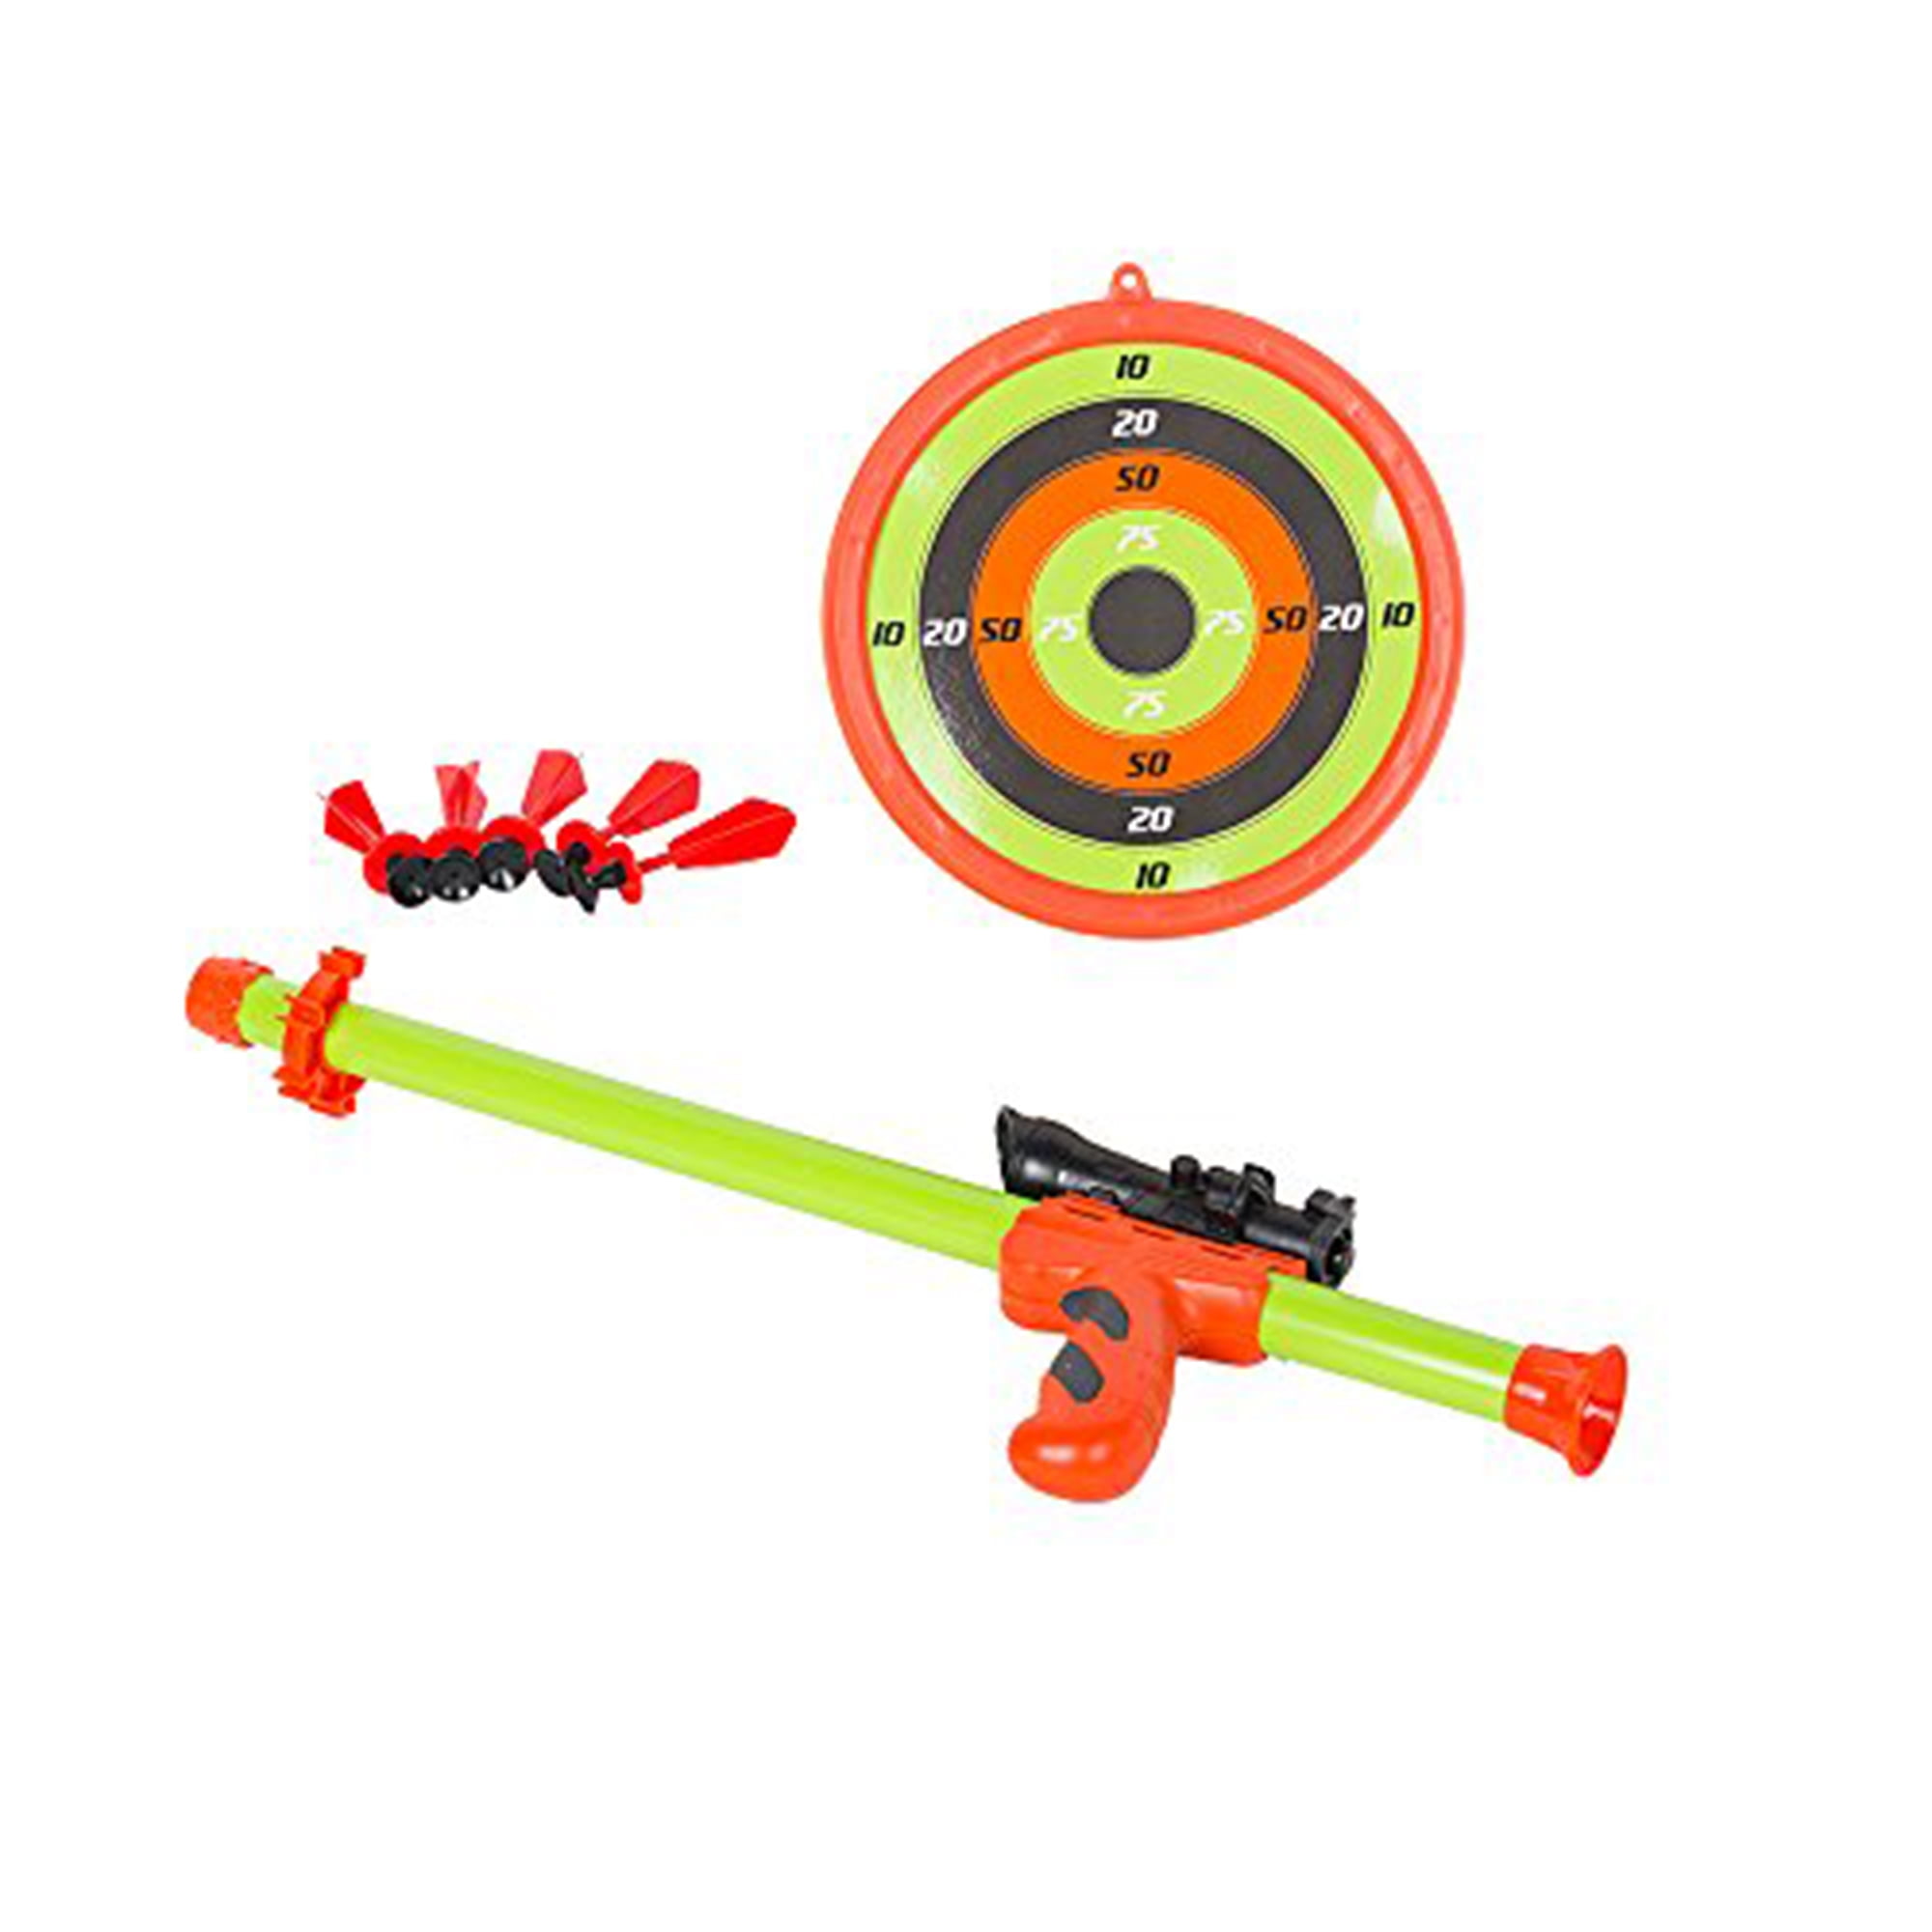 Kids Toy Gun Set Score Target Shooting Laser Gun Kids Home Game 